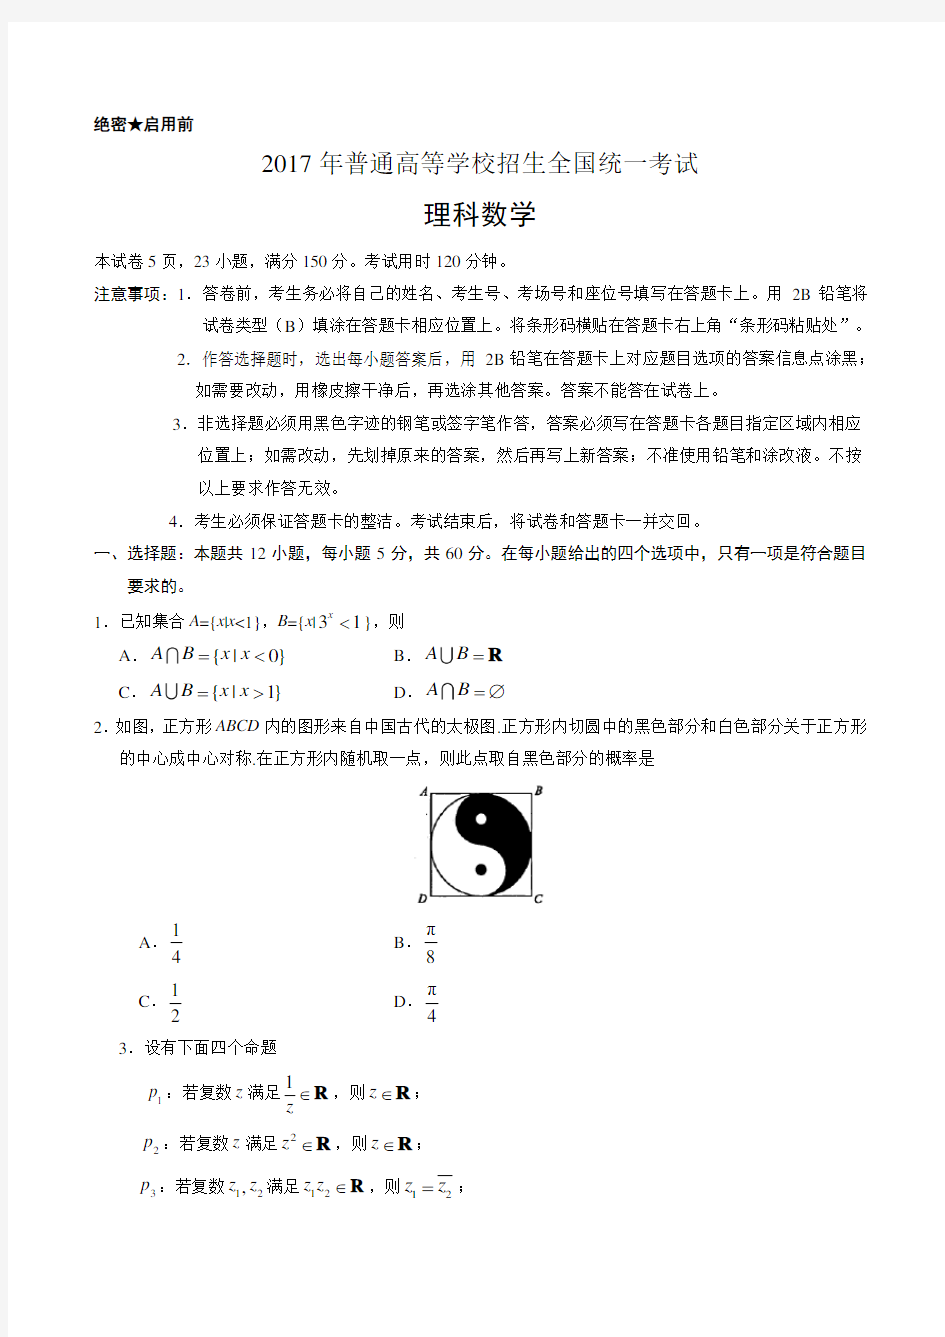 2017年高考全国1卷理科数学和答案详解(word版本)